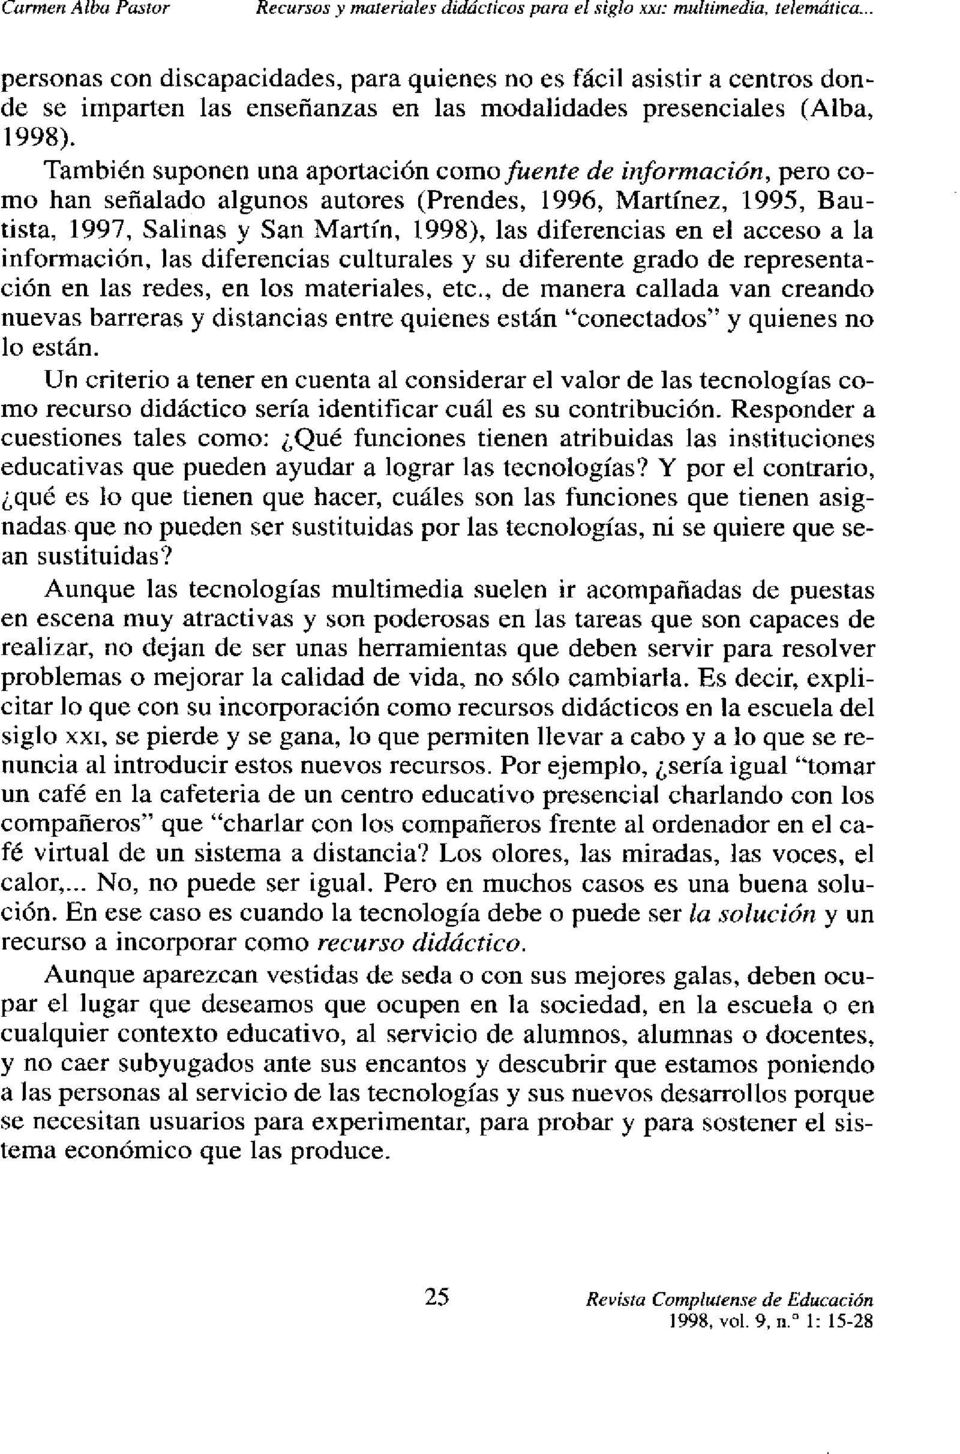 También suponen una aportación como fuente de información, pero como han señalado algunos autores (Prendes, 1996, Martínez, 1995, Bautista, 1997, Salinas y San Martín, 1998), las diferencias en el